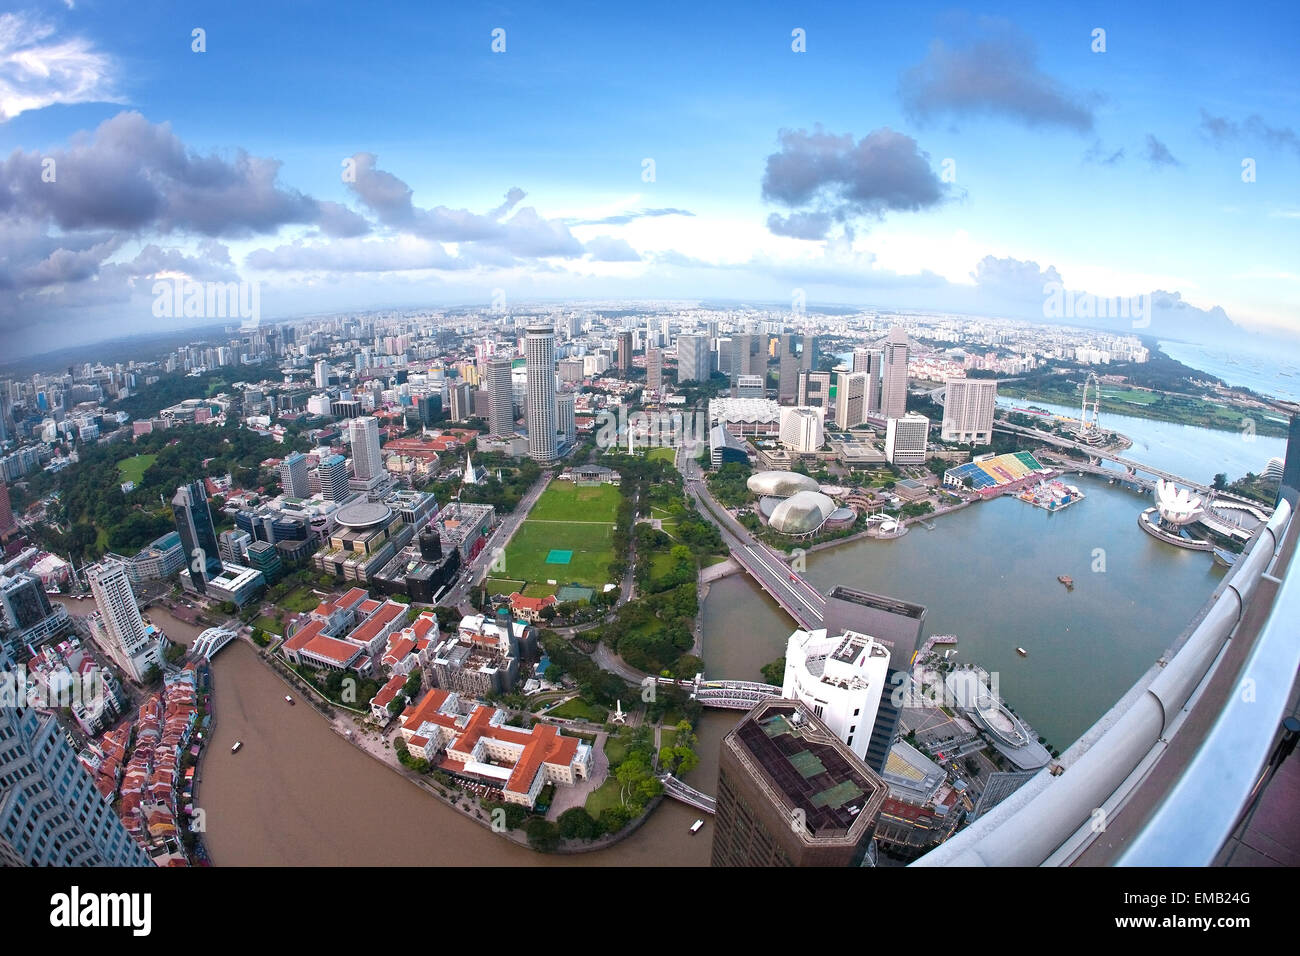 Singapur, 13. Februar - Weitwinkel Luftaufnahme von Singapur Skyline der Stadt einschließlich der Singapore Flyer und das Esplanade theatr Stockfoto